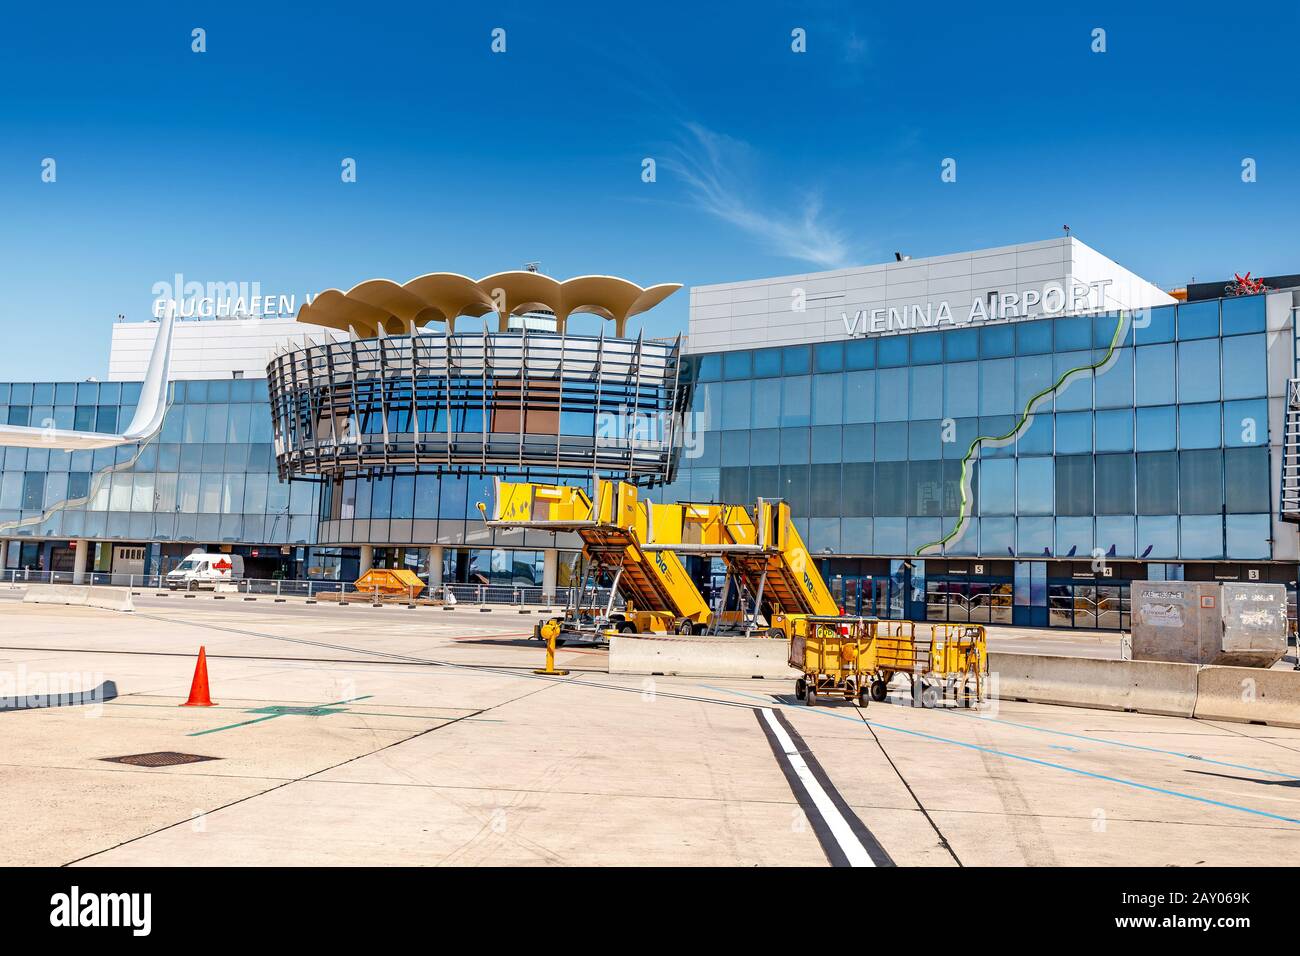 09 August 2019, Vienna, Austria: The Vienna International Airport Schwechat building Stock Photo